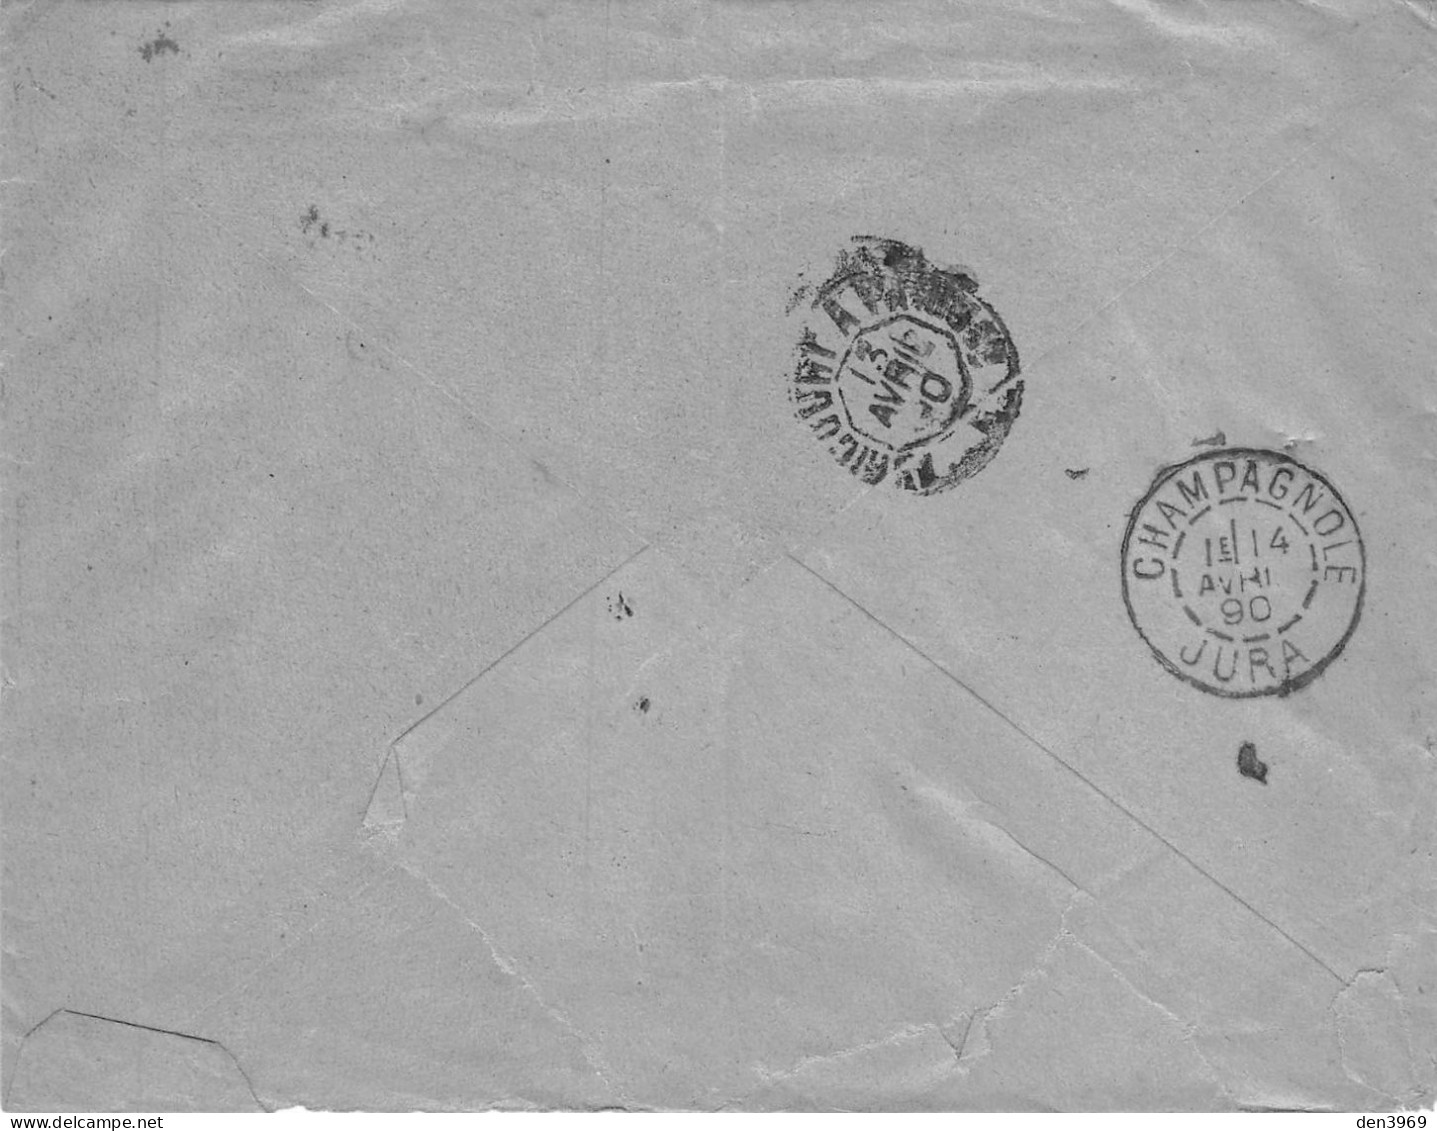 Enveloppe Petetin, Meunier à CHAMPAGNOLE (Jura) - Envoi De Emile Bitz, Grains Et Farines - Cachet Poste Reims, 1890 - Champagnole